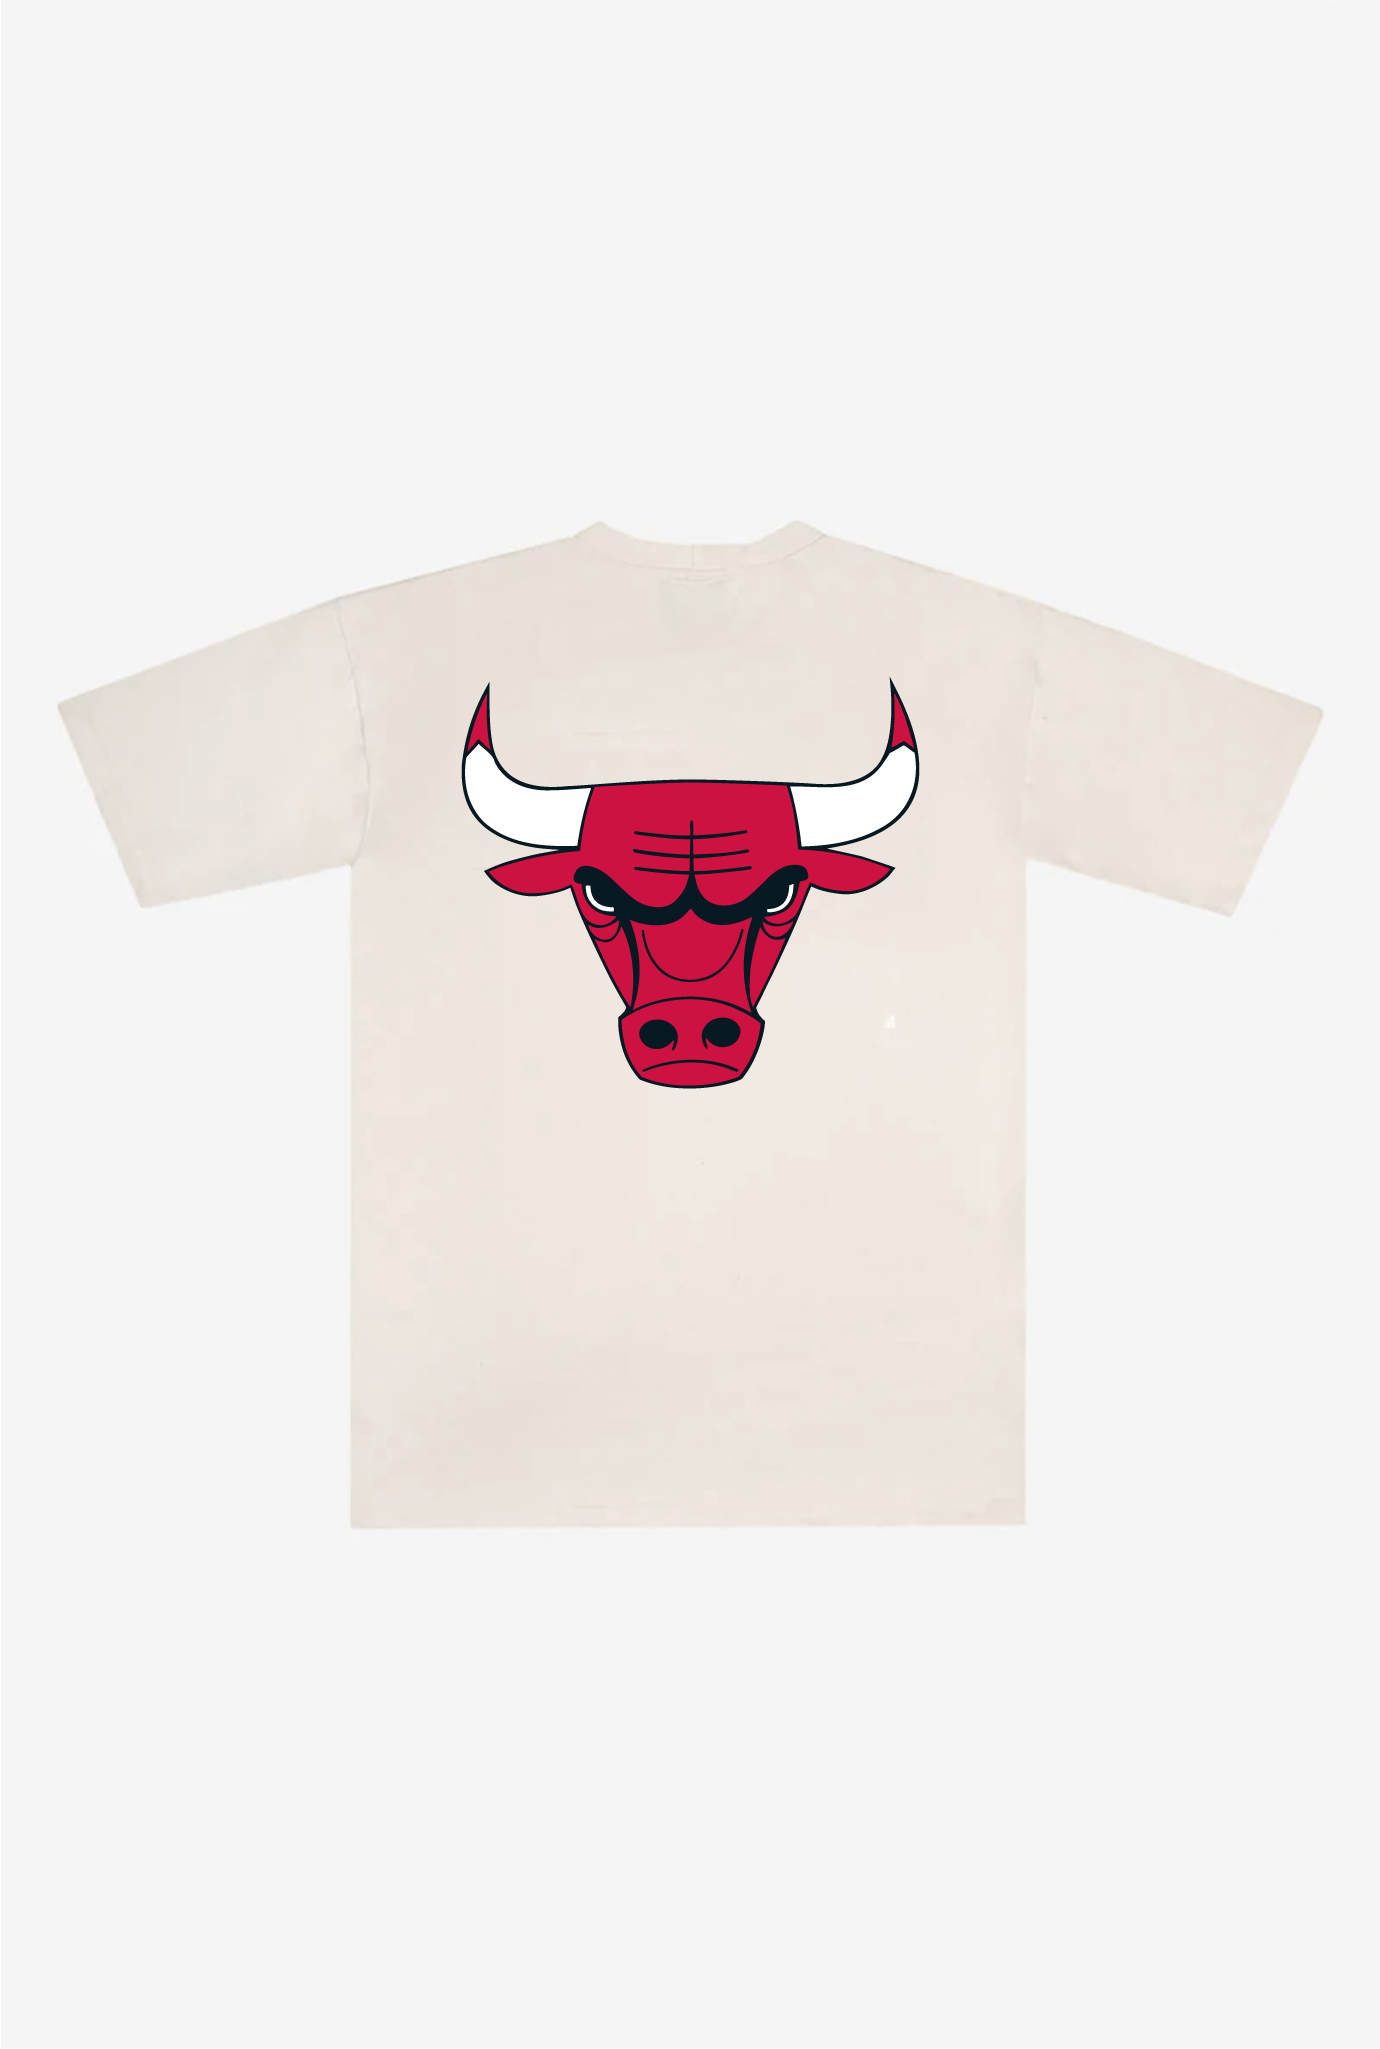 Chicago Bulls Heavyweight T-Shirt - Natural